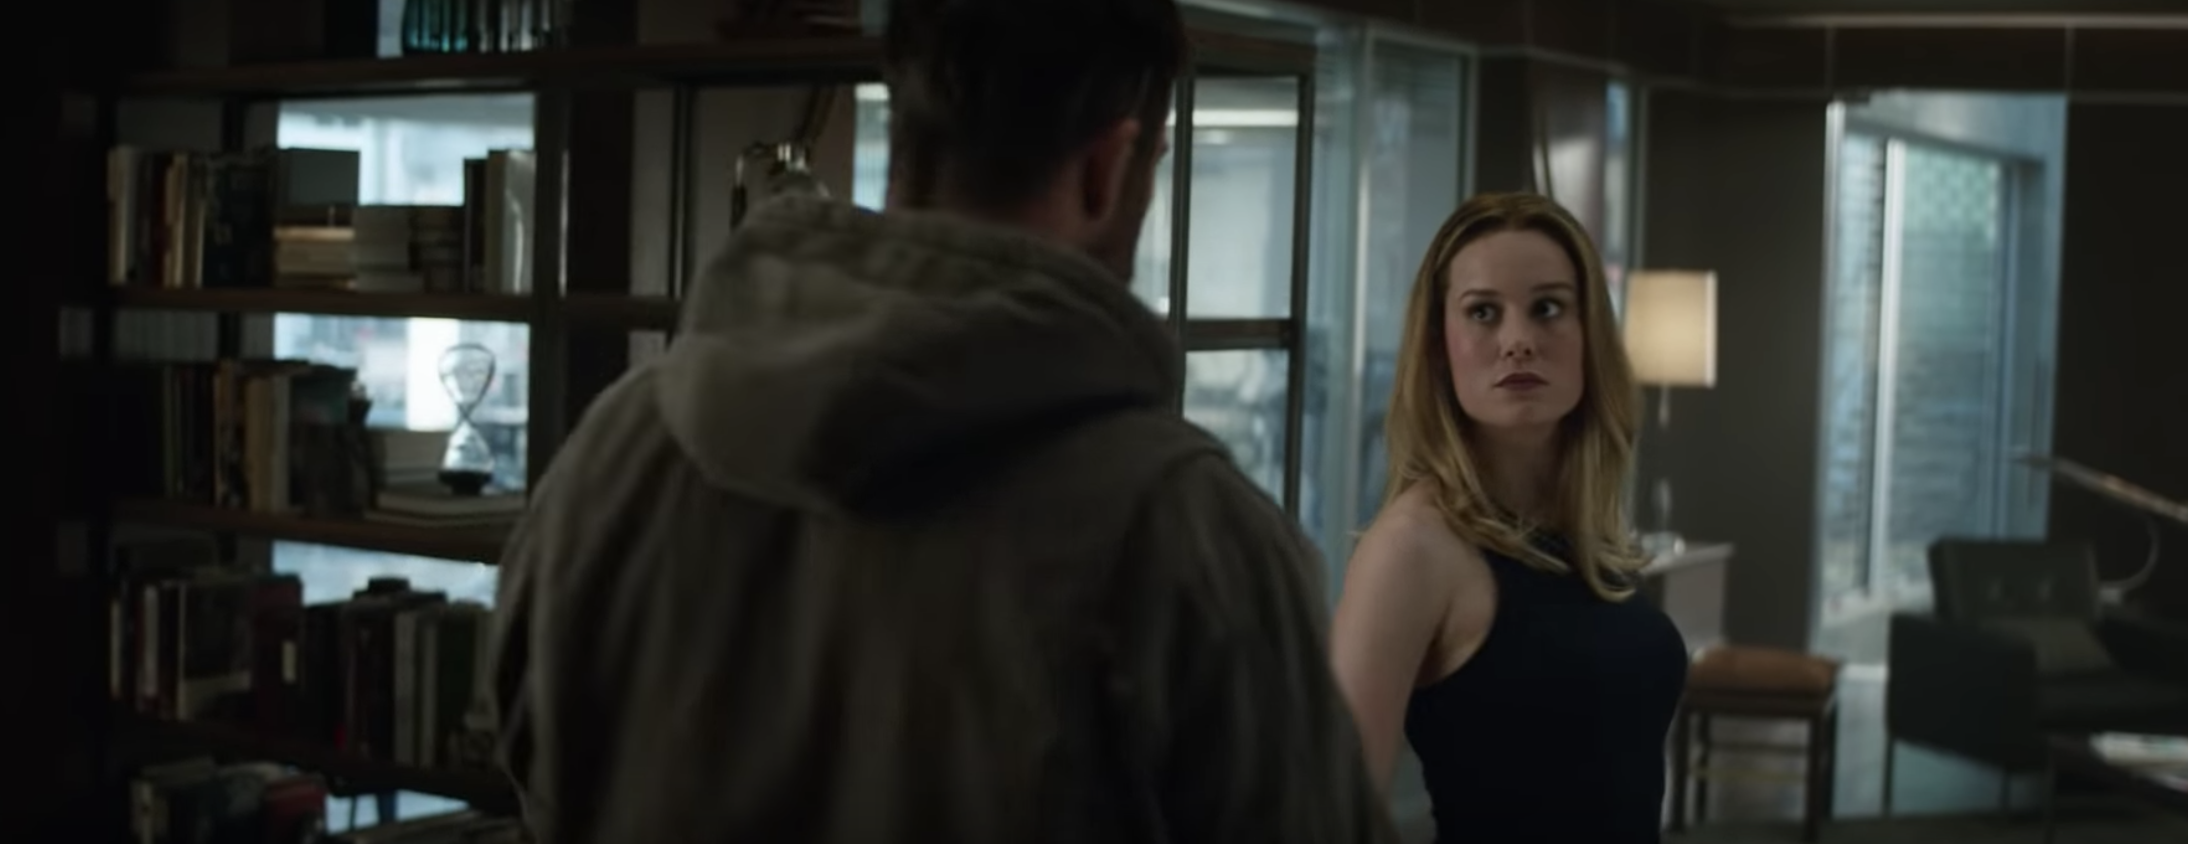 Brie Larson as Captain Marvel in Avengers: Endgame trailer